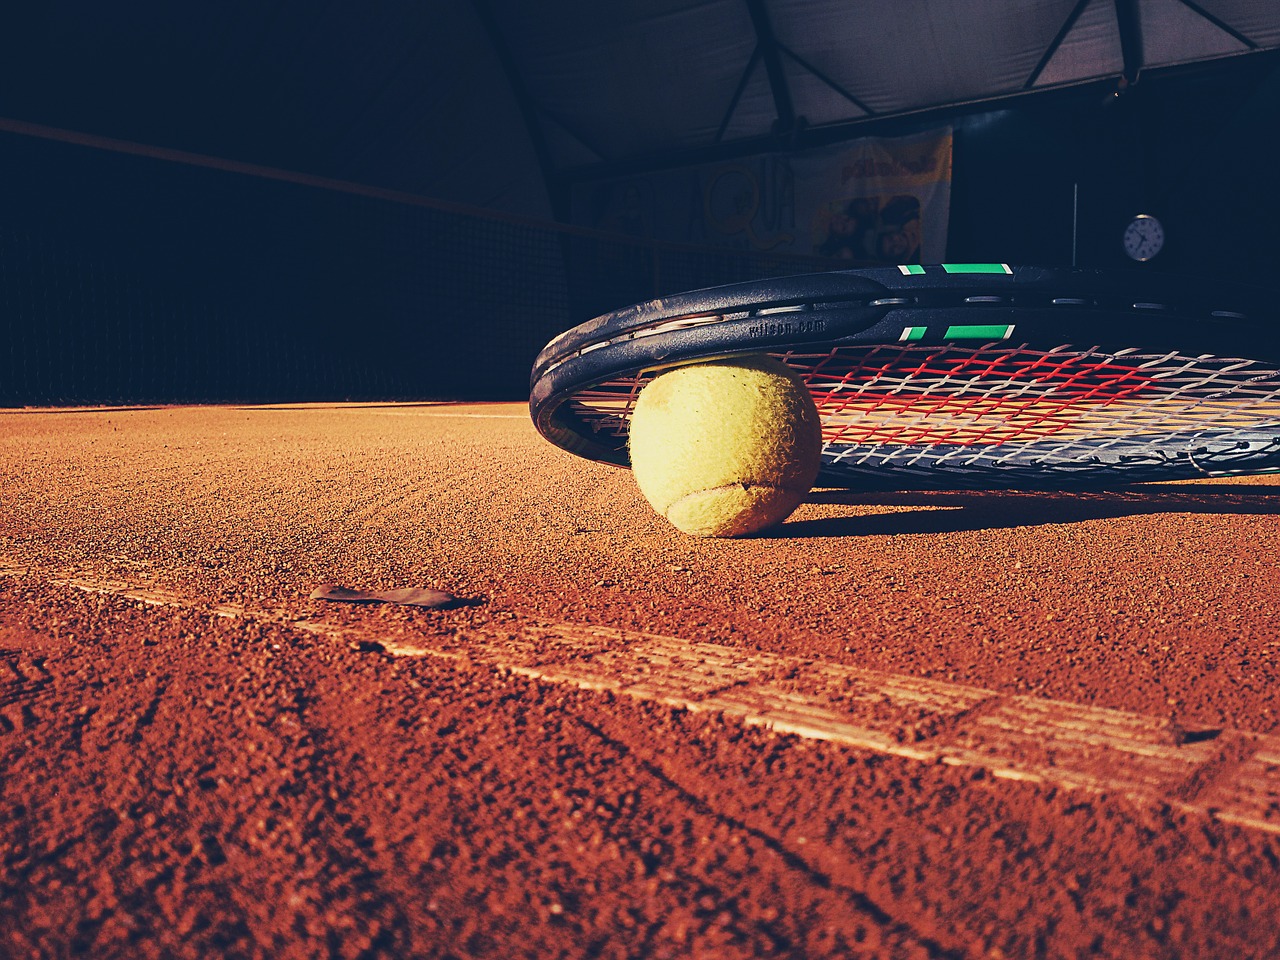 Internazionali di Tennis Roma 2018: tutti gli sconti